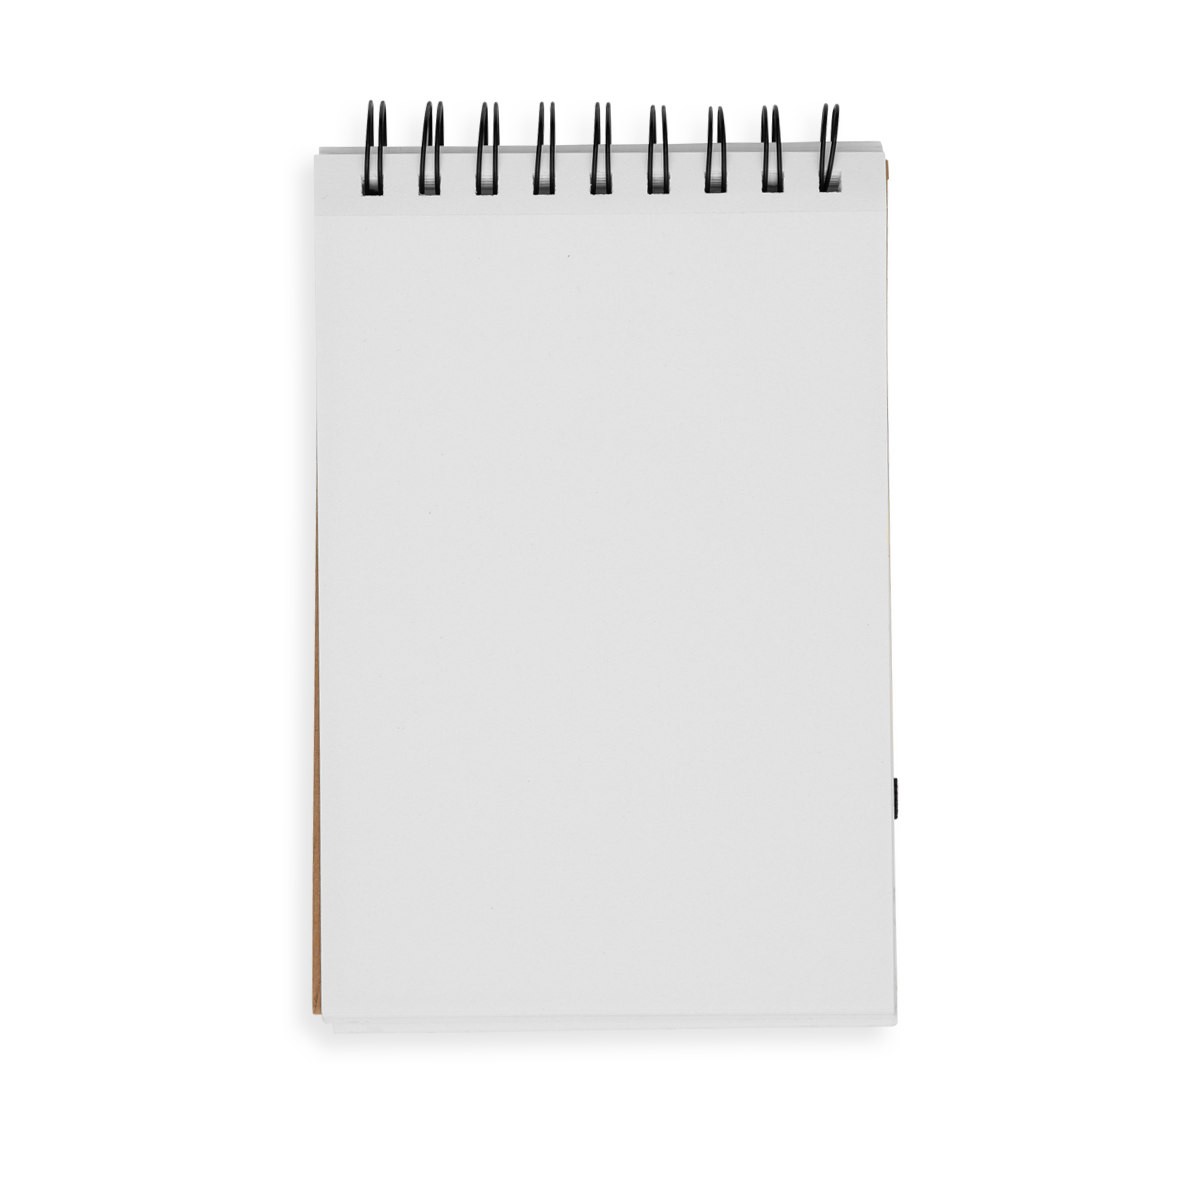 D.I.Y. Sketchbook Large White Paper – Soca Girl